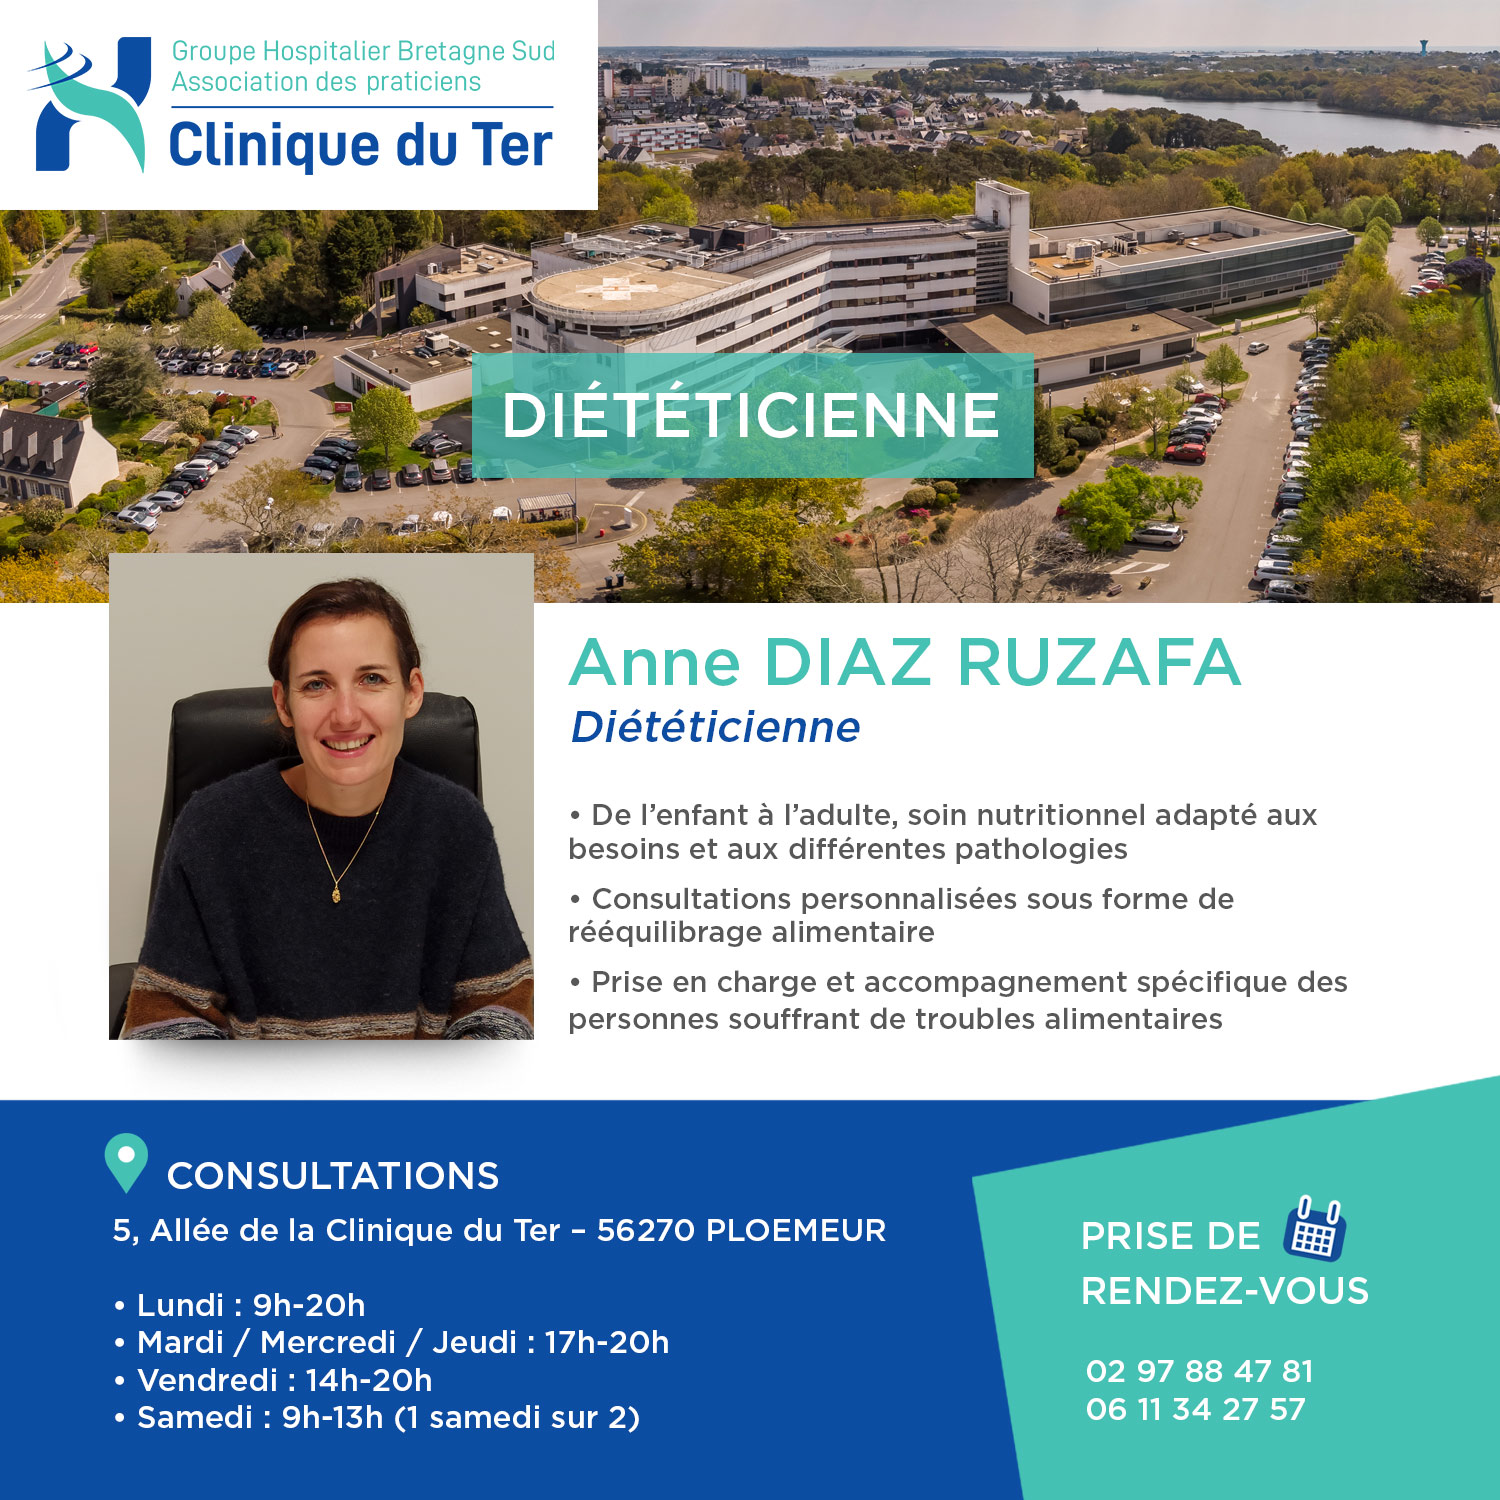 Bienvenue à Anne Diaz Ruzafa, votre nouvelle diététicienne à la Clinique du Ter